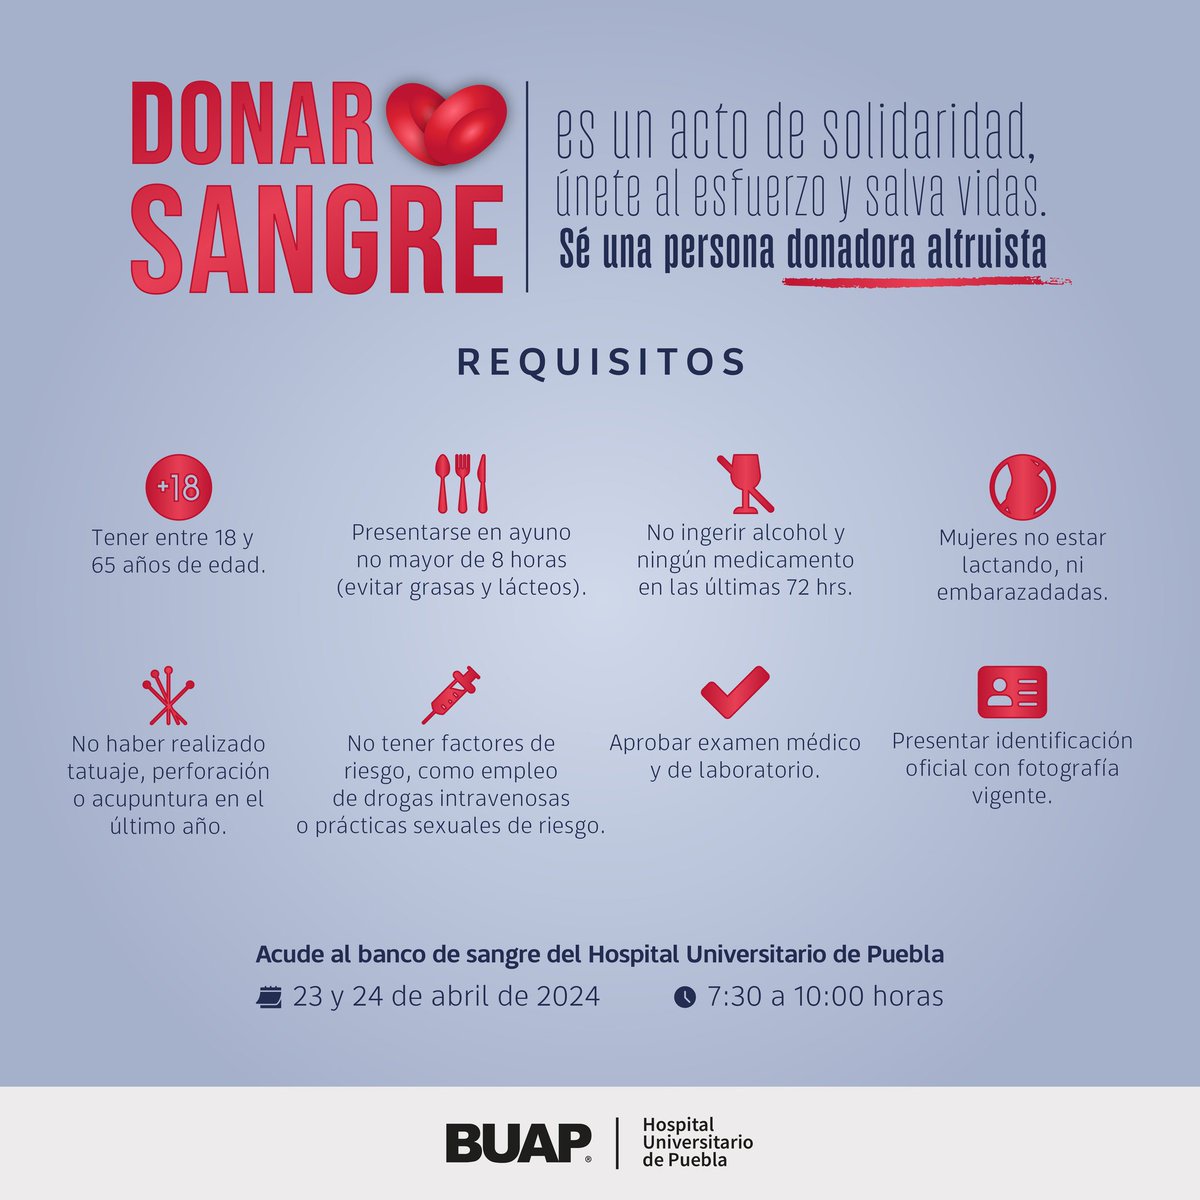 Donar sangre es un acto de solidaridad. Únete al esfuerzo y salva vidas. Acude al banco de sangre del Hospital Universitario de Puebla. 📅23 y 24 de abril de 2024. 🕢7:30 a 10:00 horas. Revisa los requisitos y sé una persona donadora altruista.